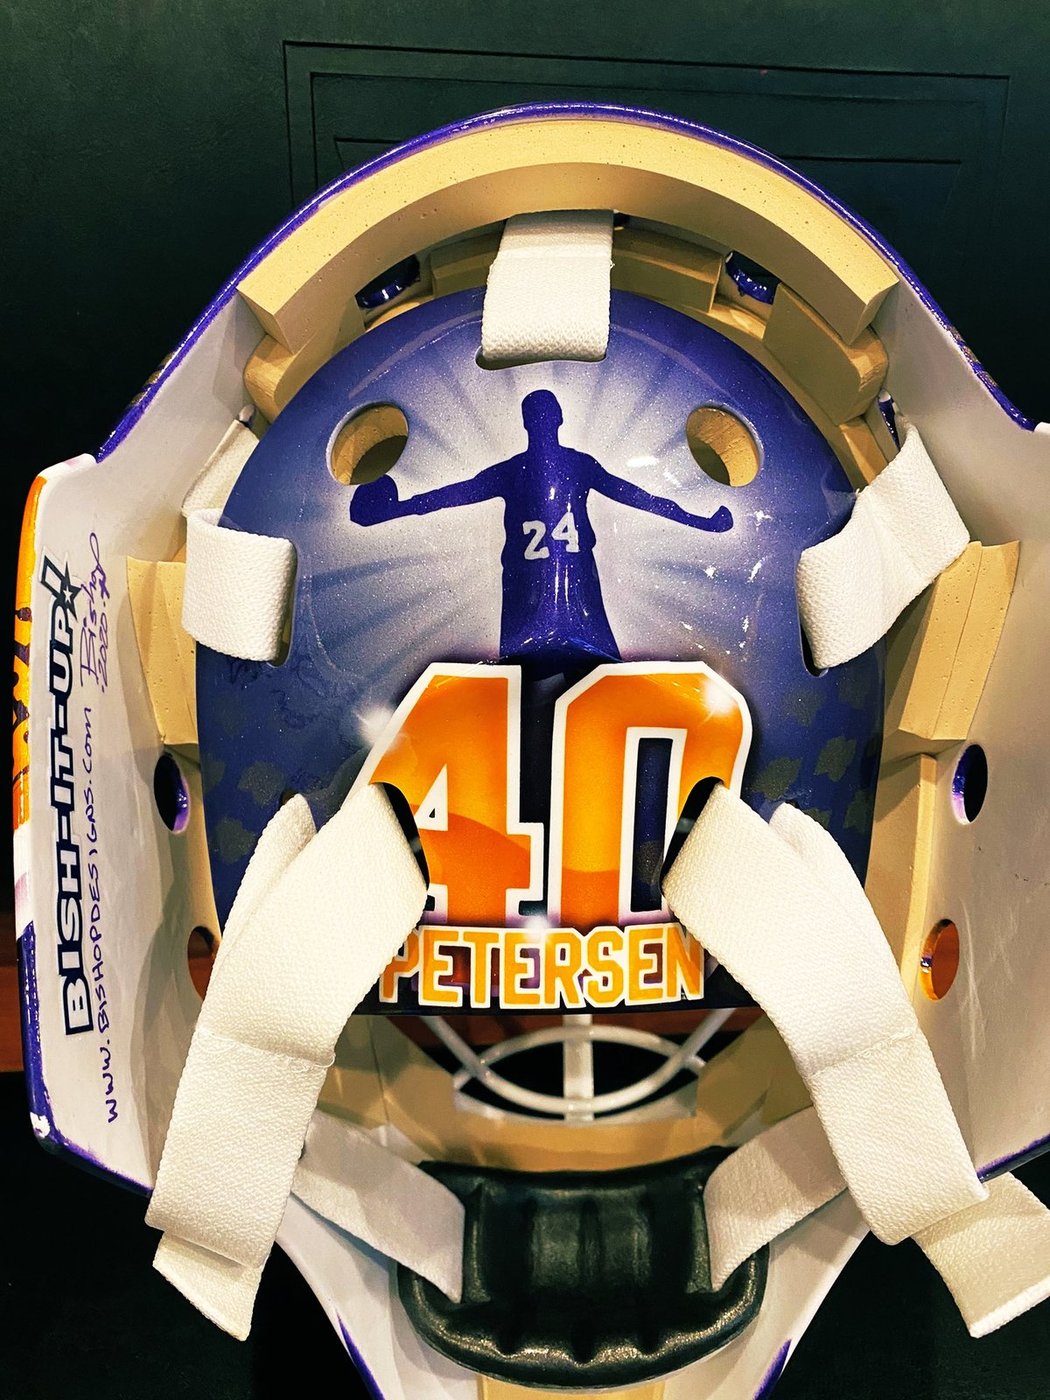 Maska Cala Petersena se vzpomínkou na legendárního basketbalistu Kobeho Bryanta